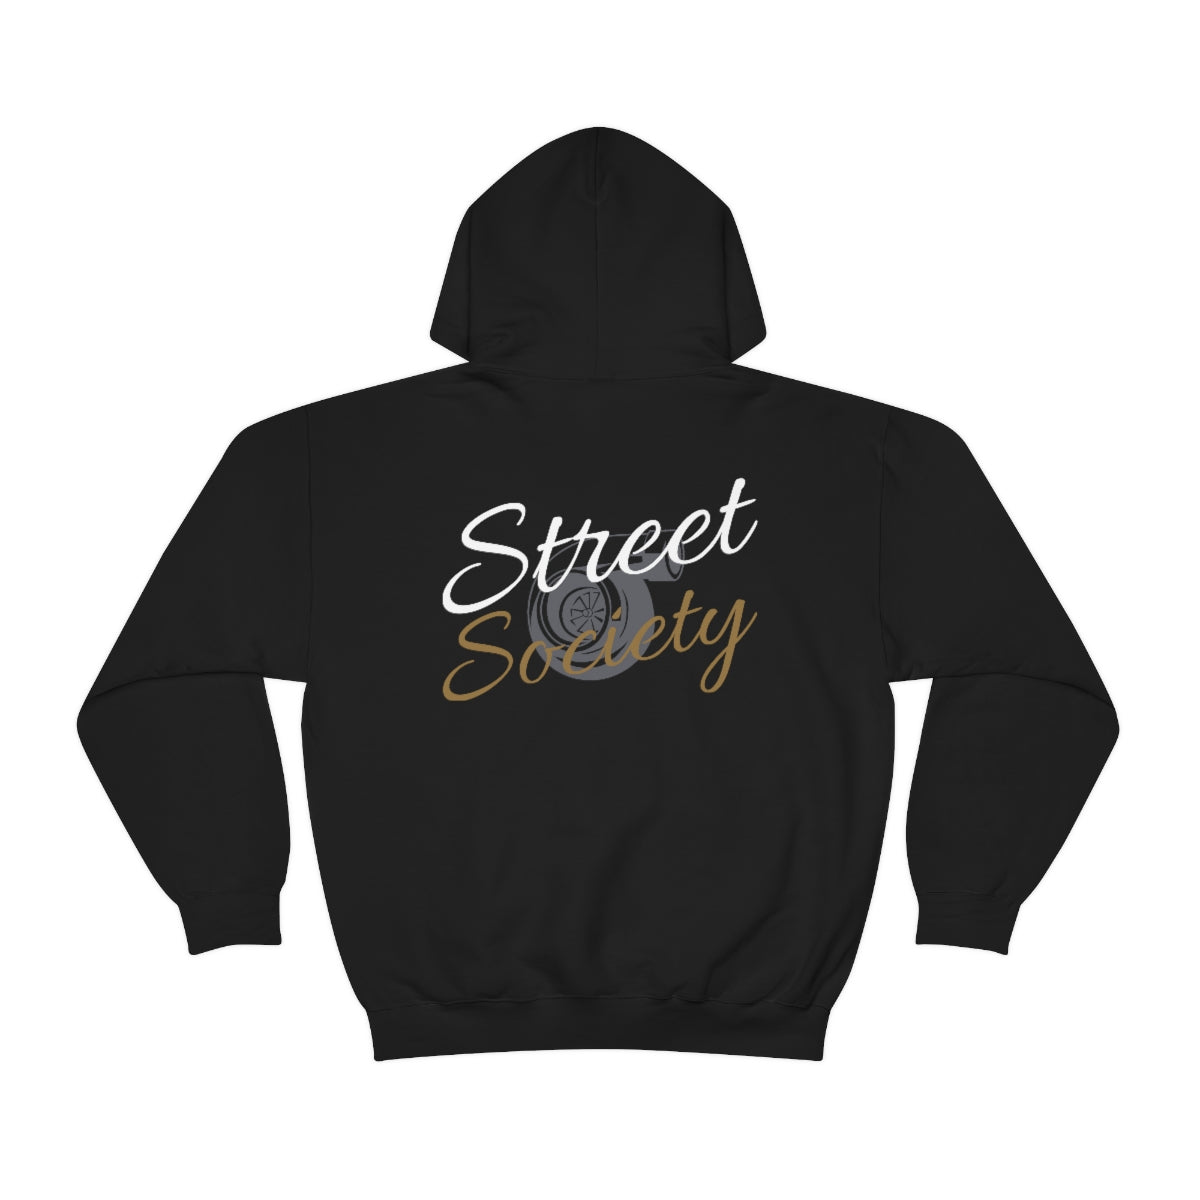 Street Society Hoodie